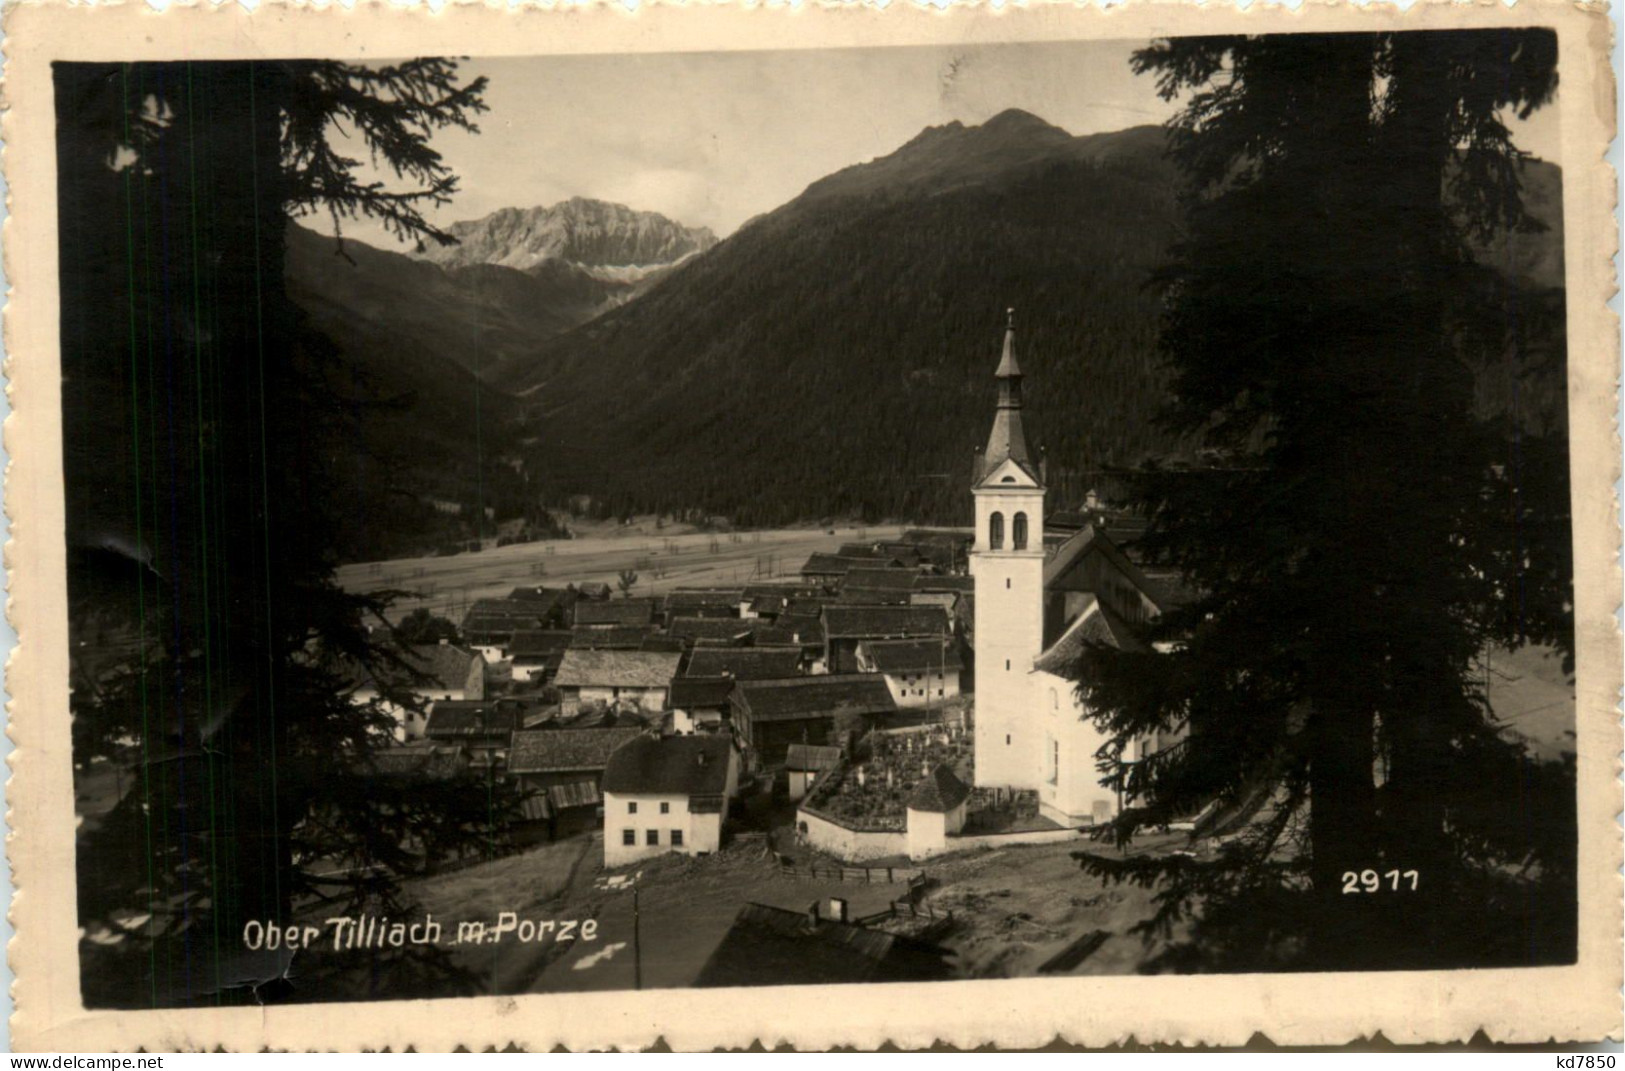 Obertilliach - Lienz